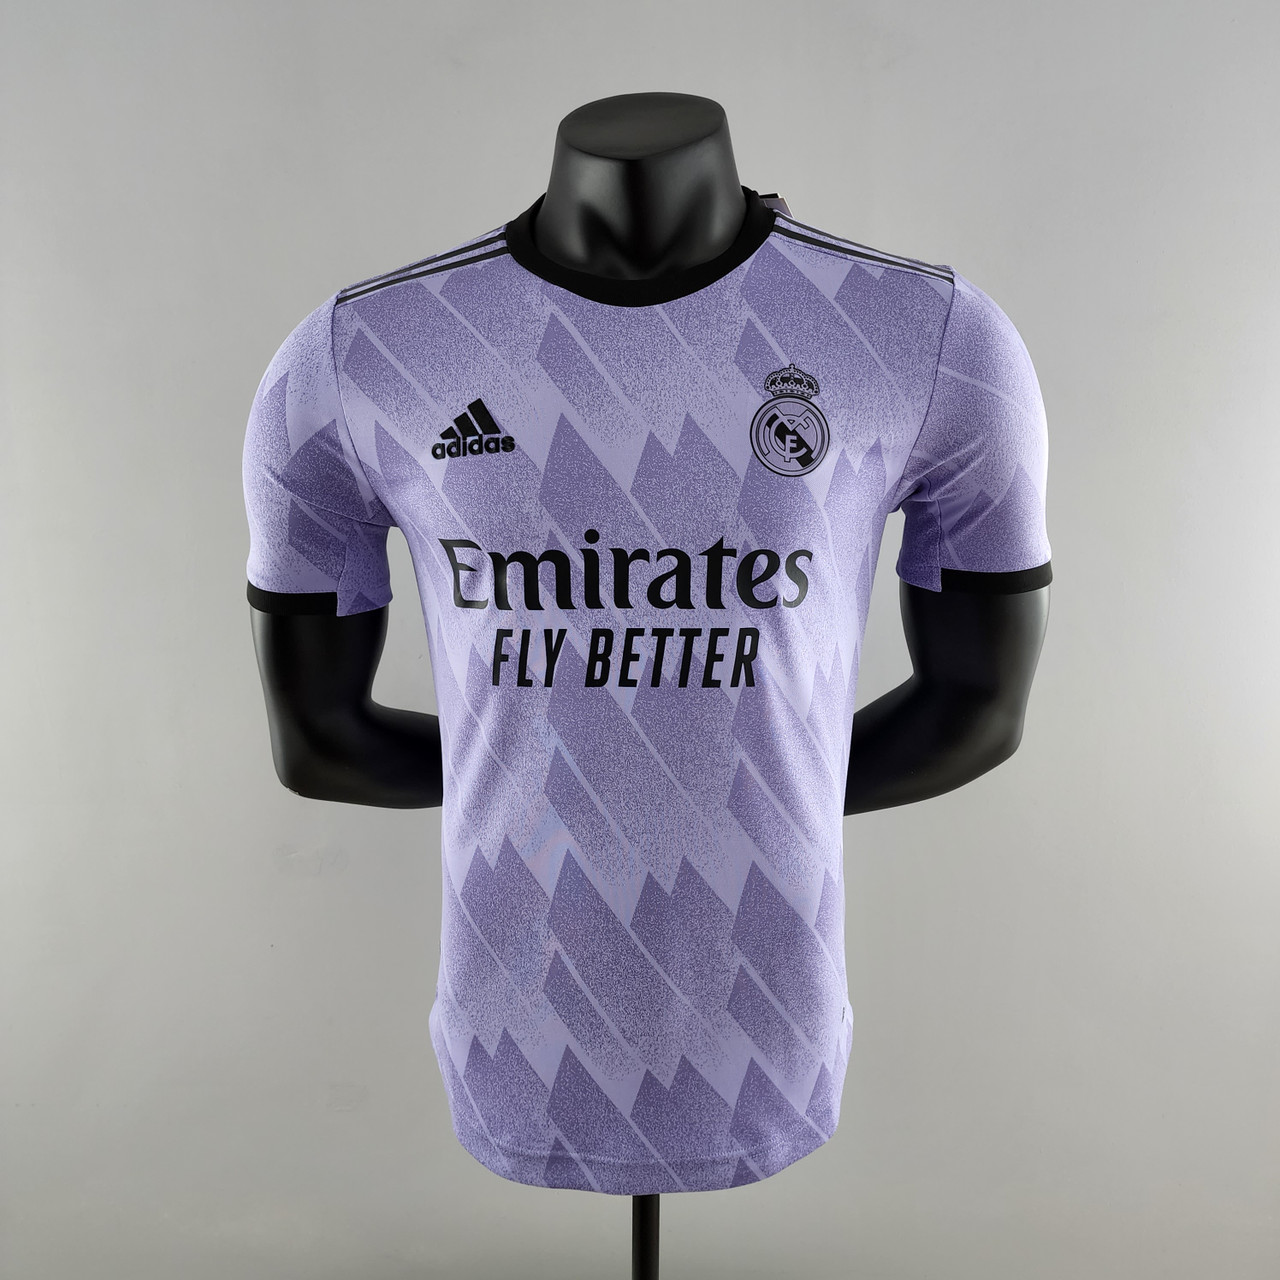 Adidas Spain 2022 Home Soccer Jersey - FutFanatics